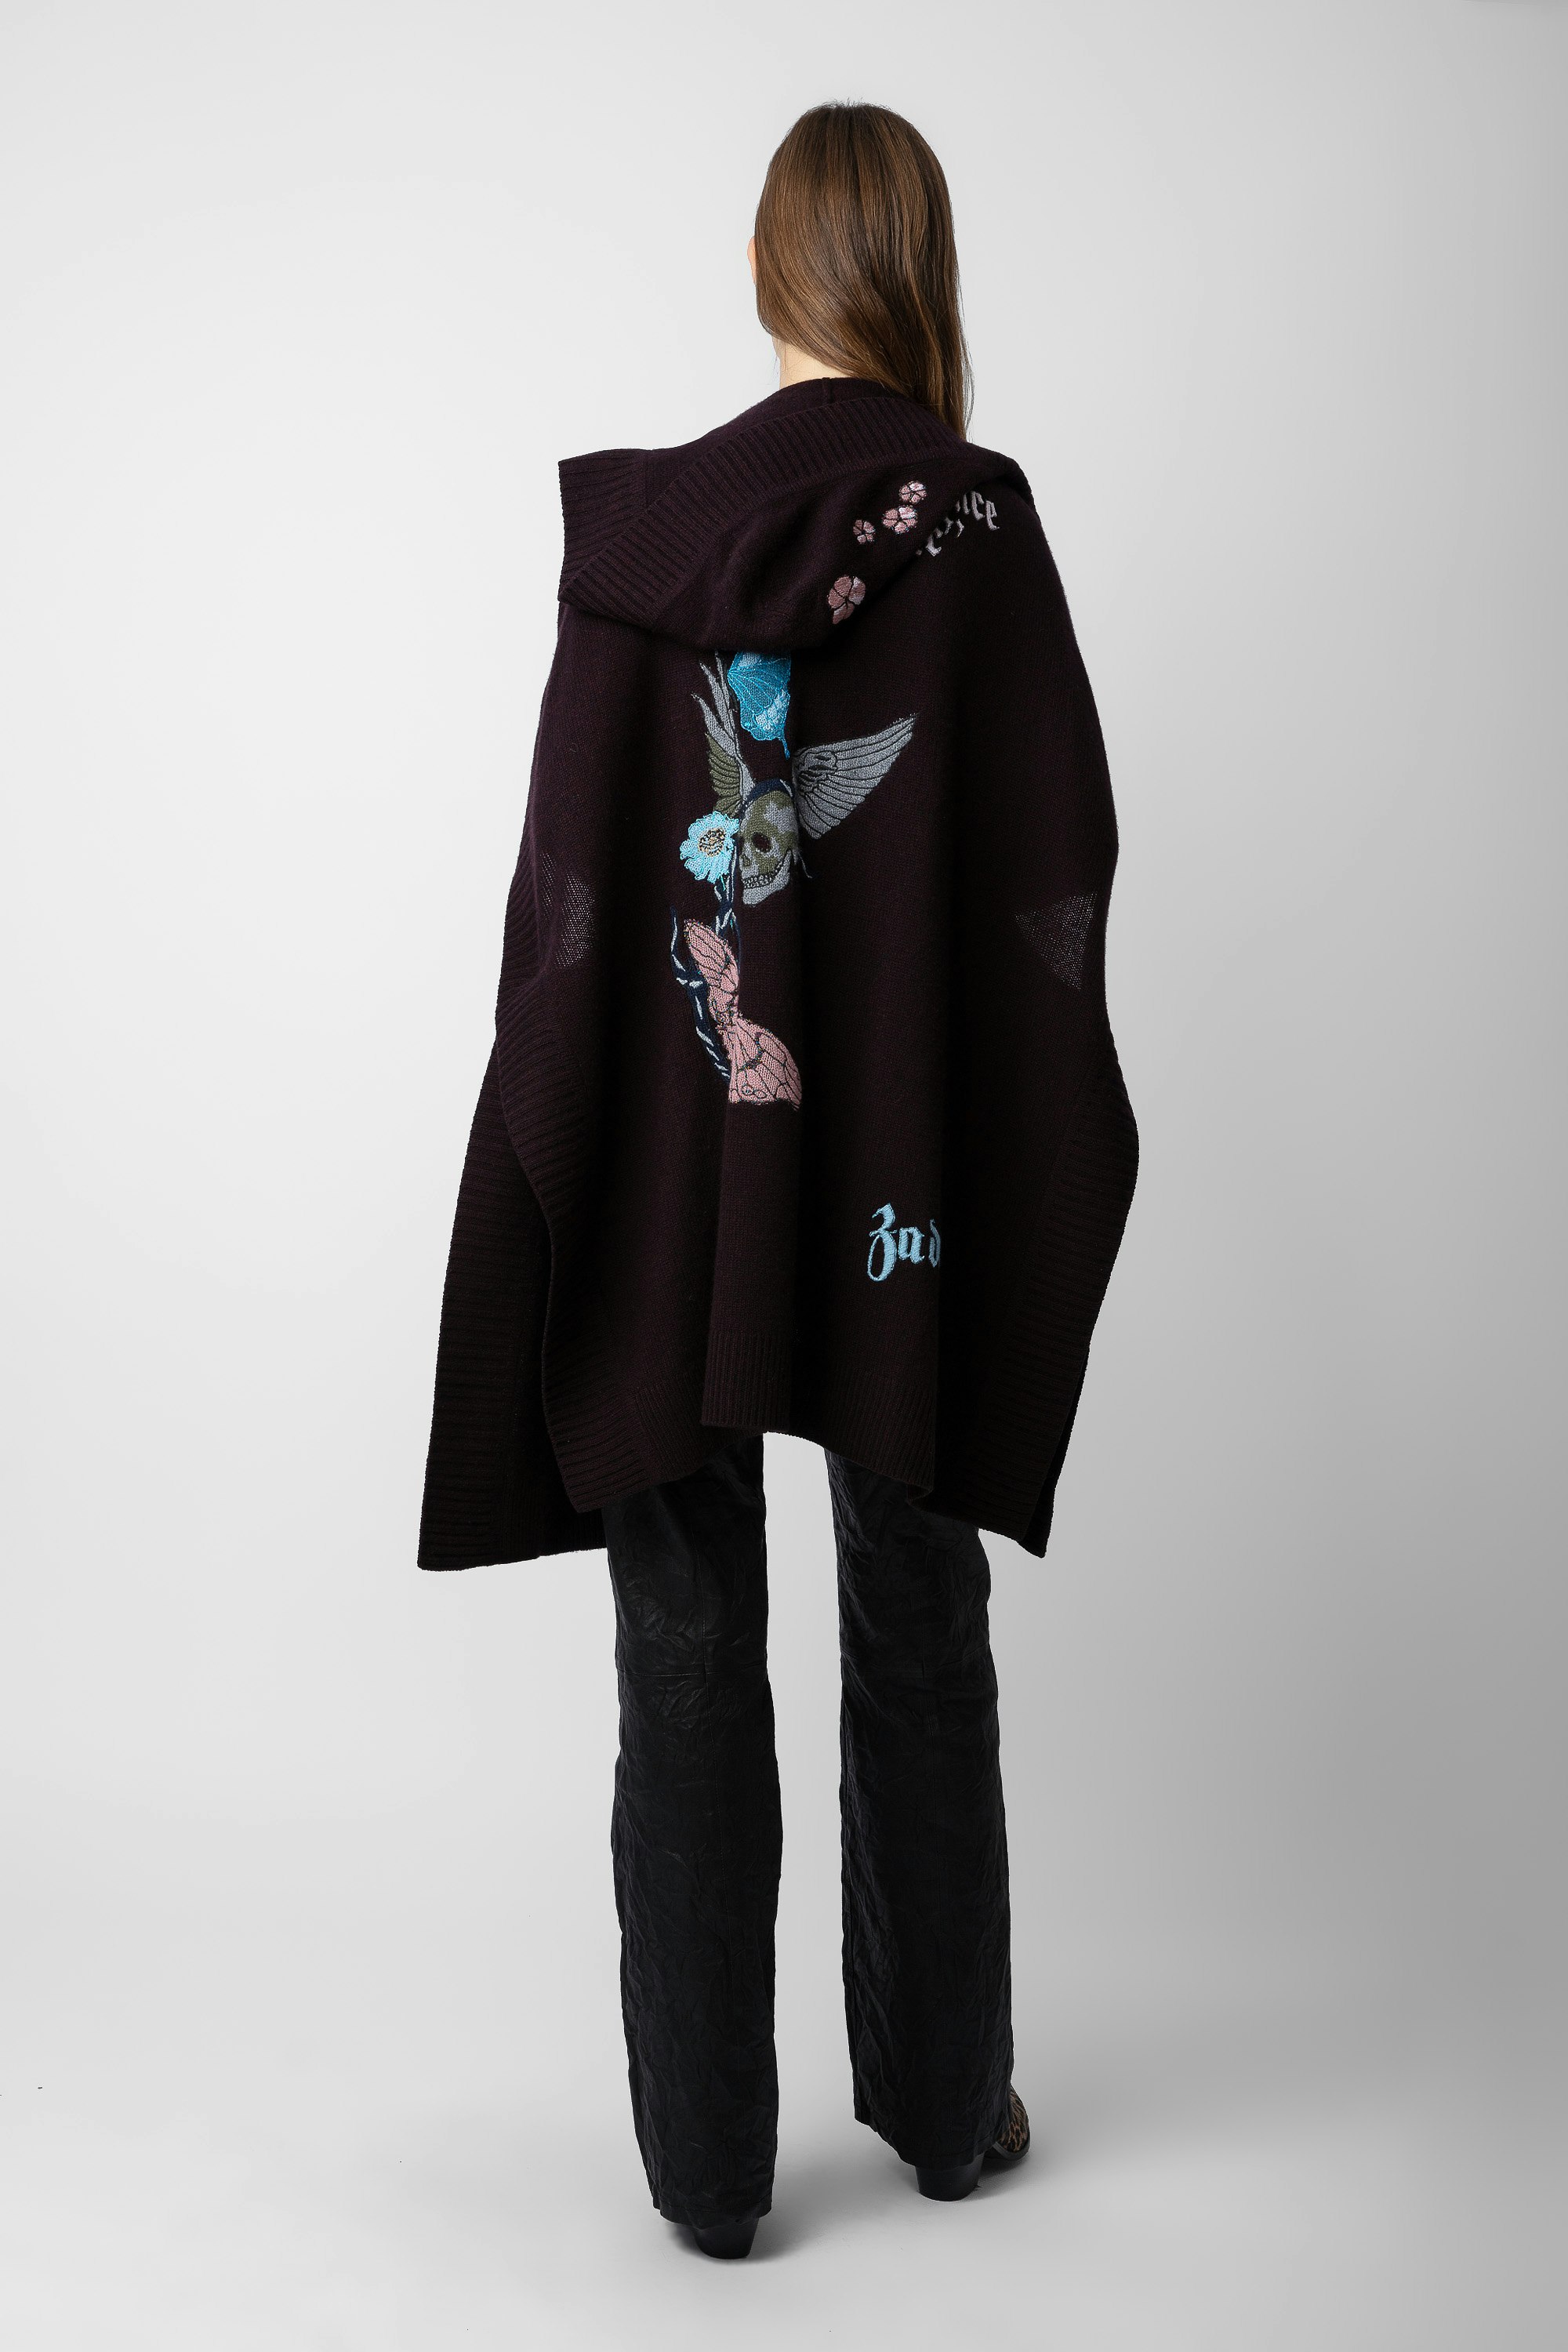 Gilet Inna Cachemire - Gilet manteau long en cachemire marron orné de motifs et messages.